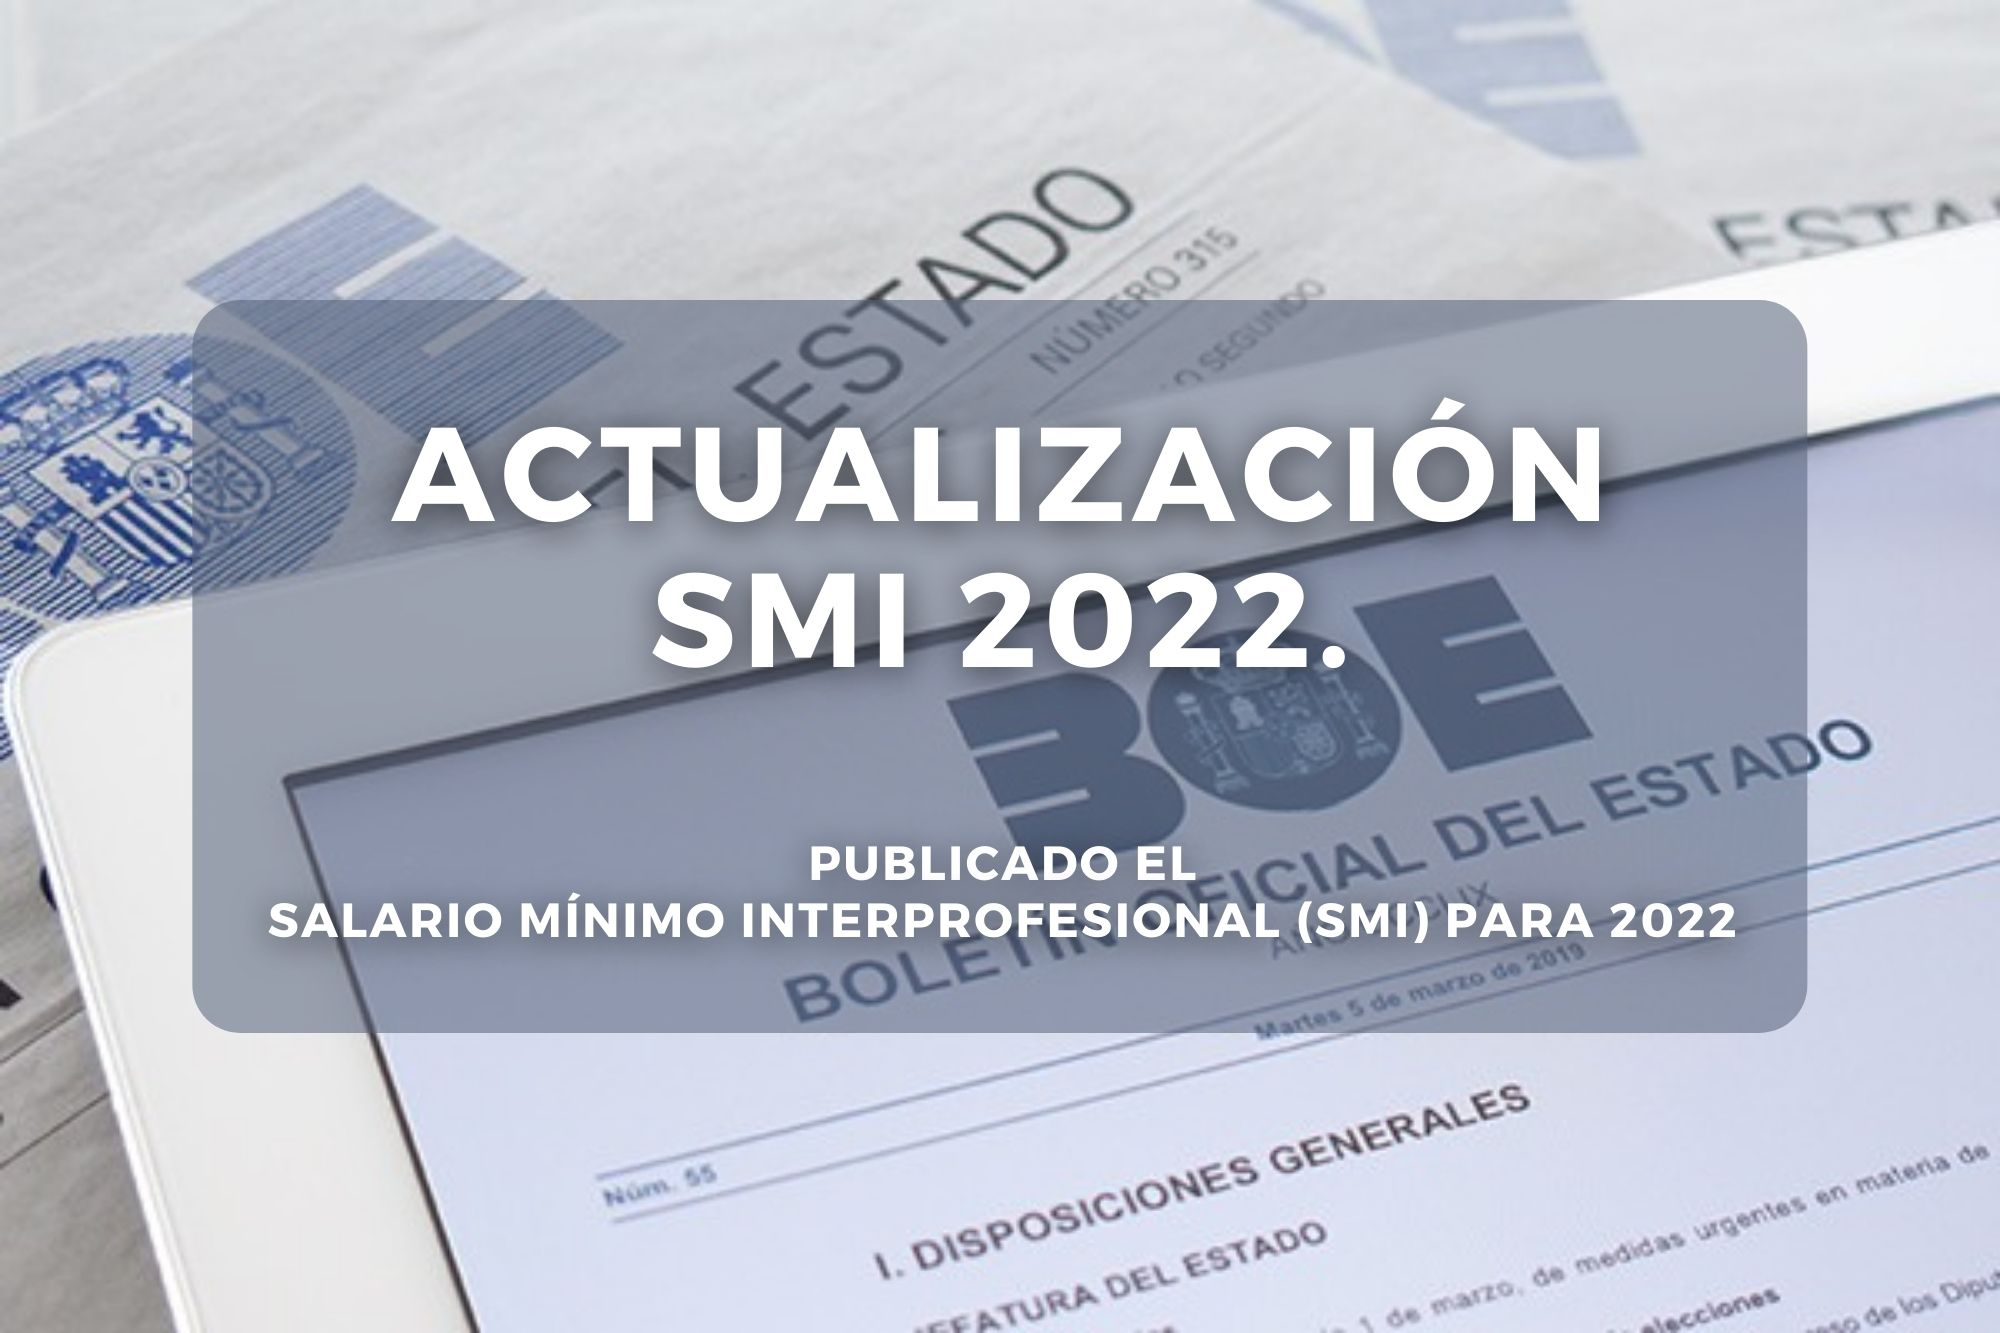 Actualización SMI: Publicado El Salario Mínimo Interprofesional Para 2022